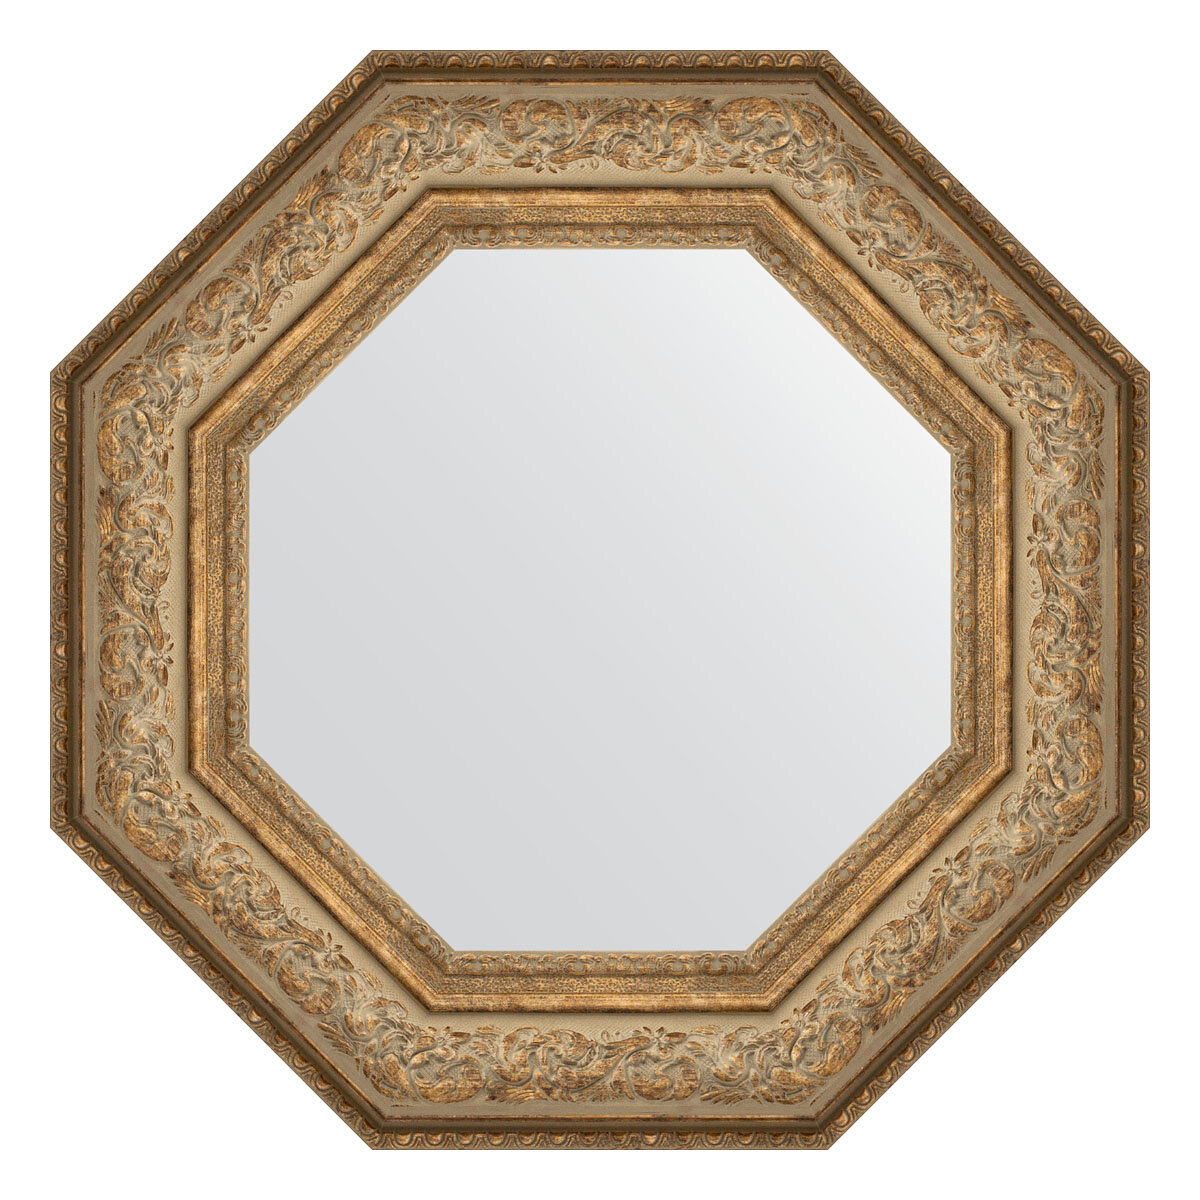 Зеркало настенное Octagon EVOFORM в багетной раме виньетка античная бронза, 60,6х60,6 см, для гостиной, прихожей, спальни и ванной комнаты, BY 3850